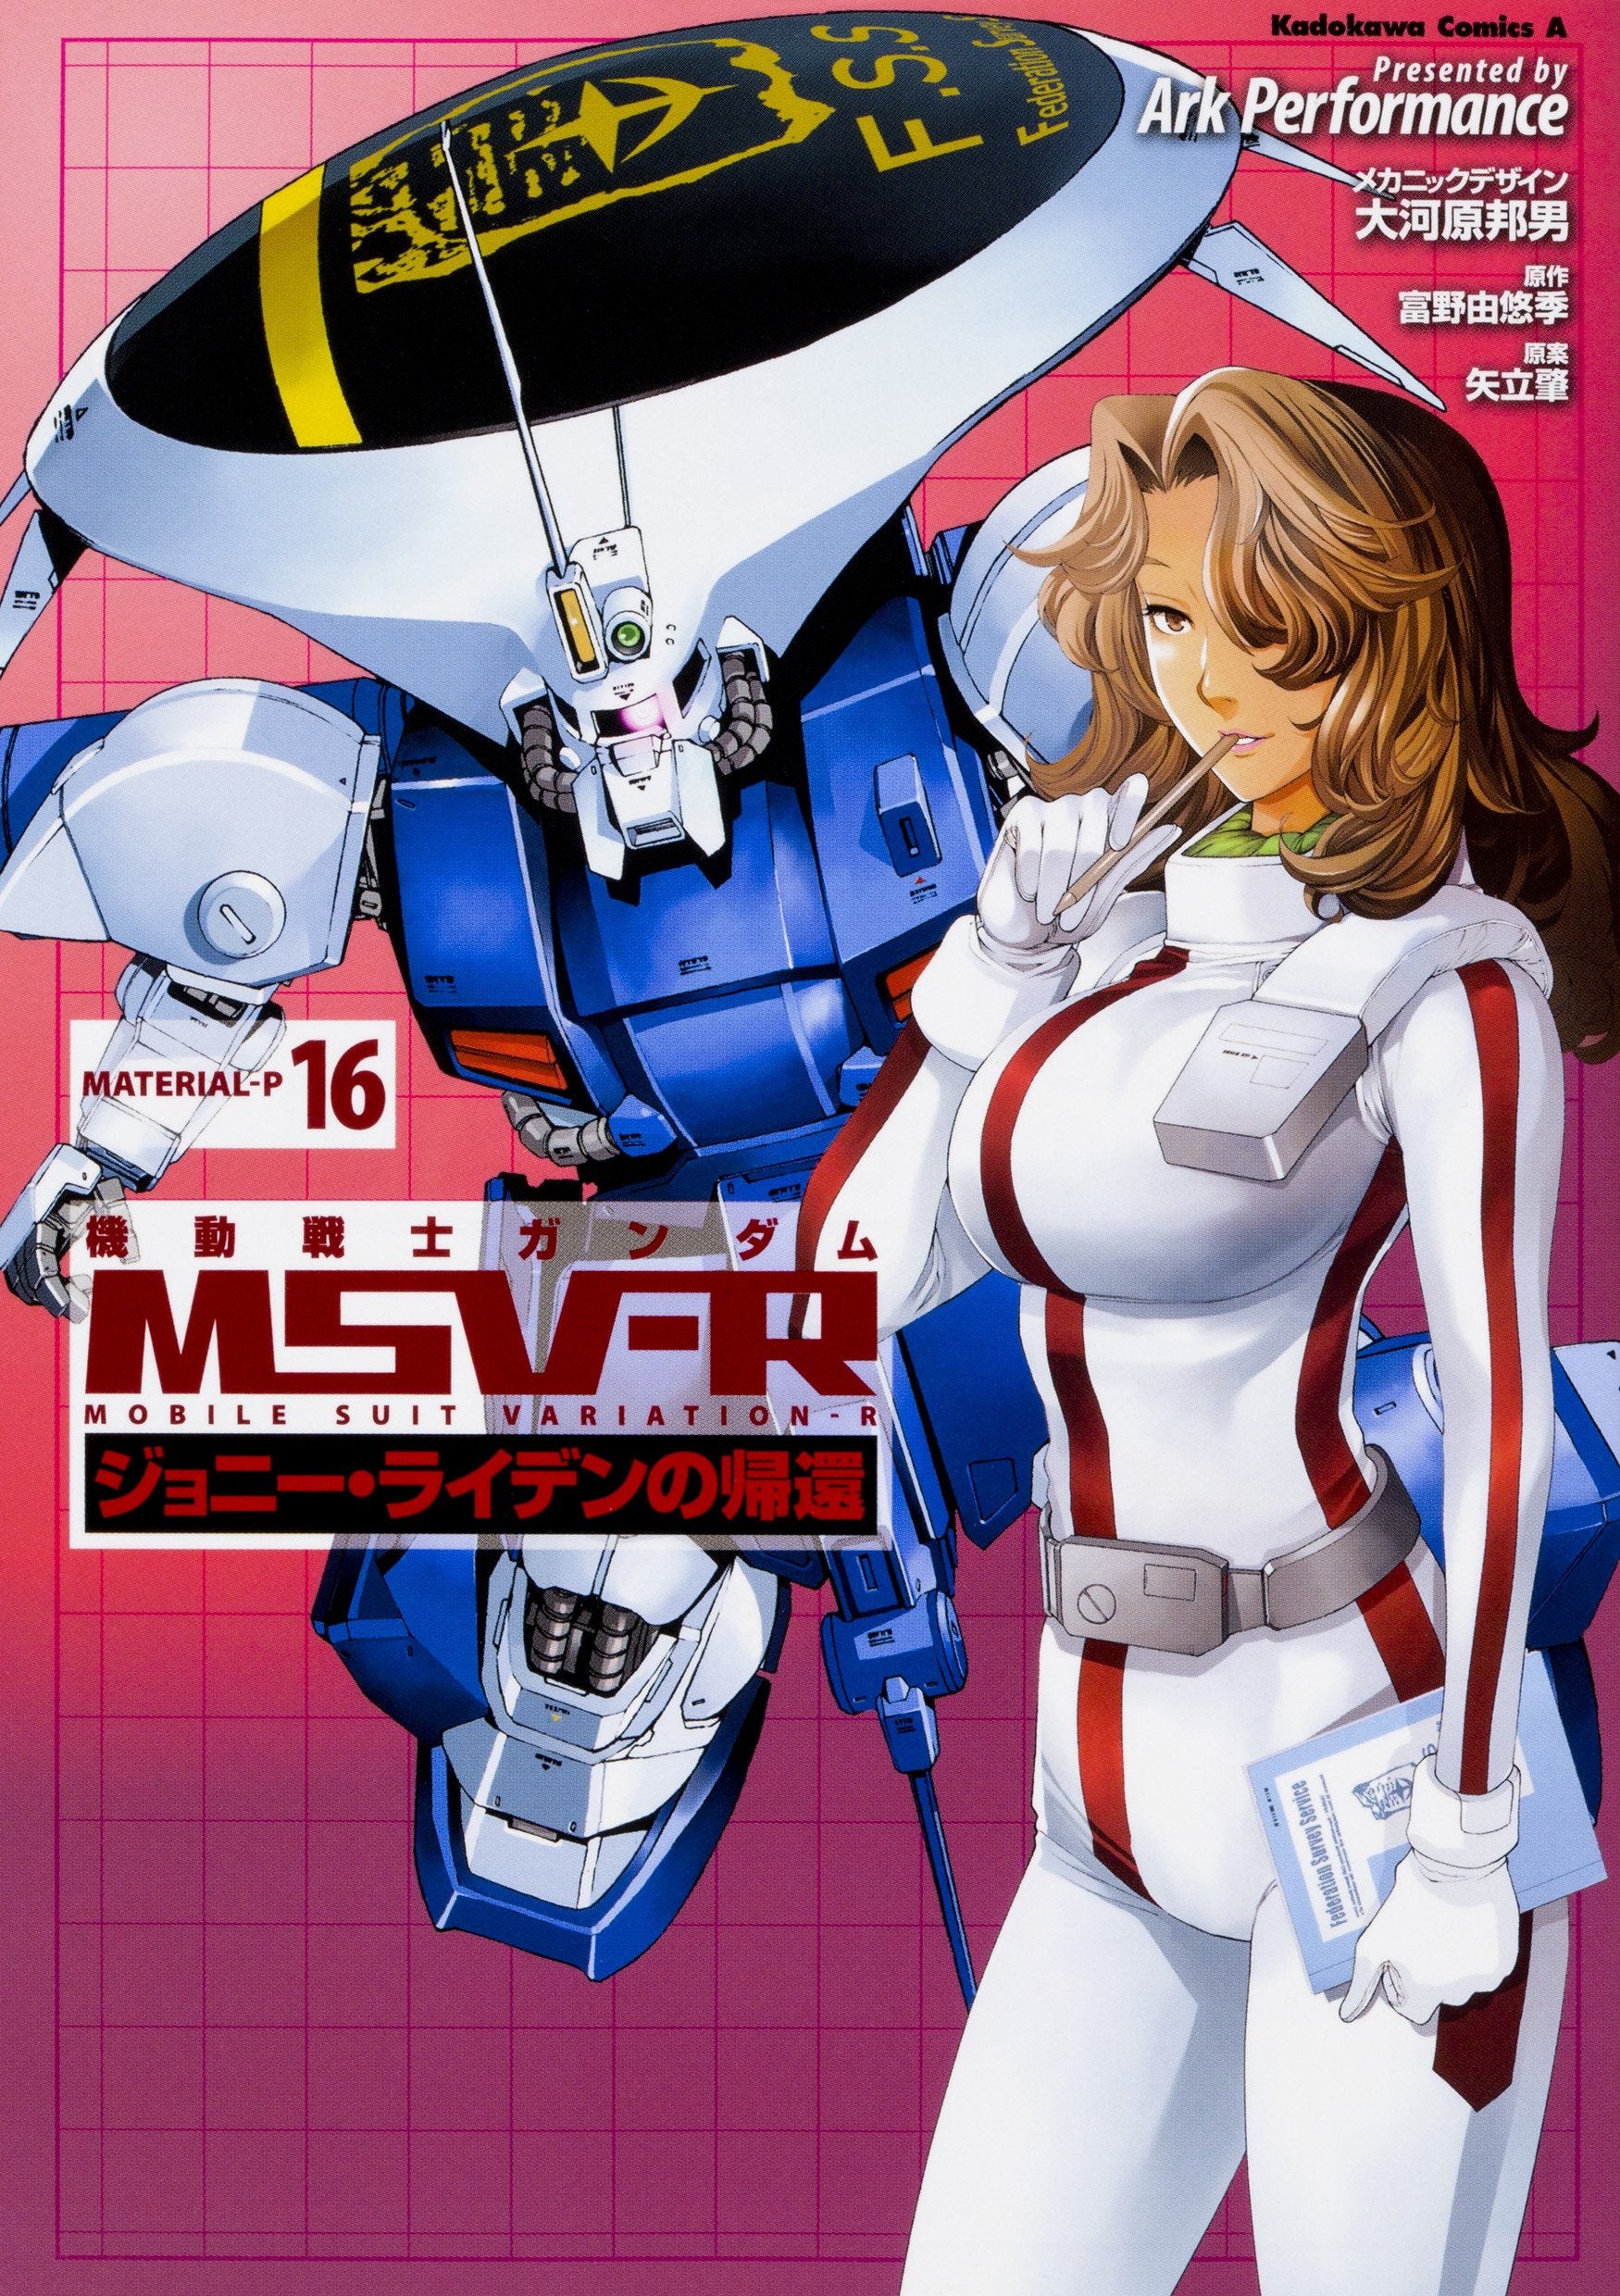 Mobile Suit Gundam MSV-R The Return of Johnny Ridden #16 /Comic